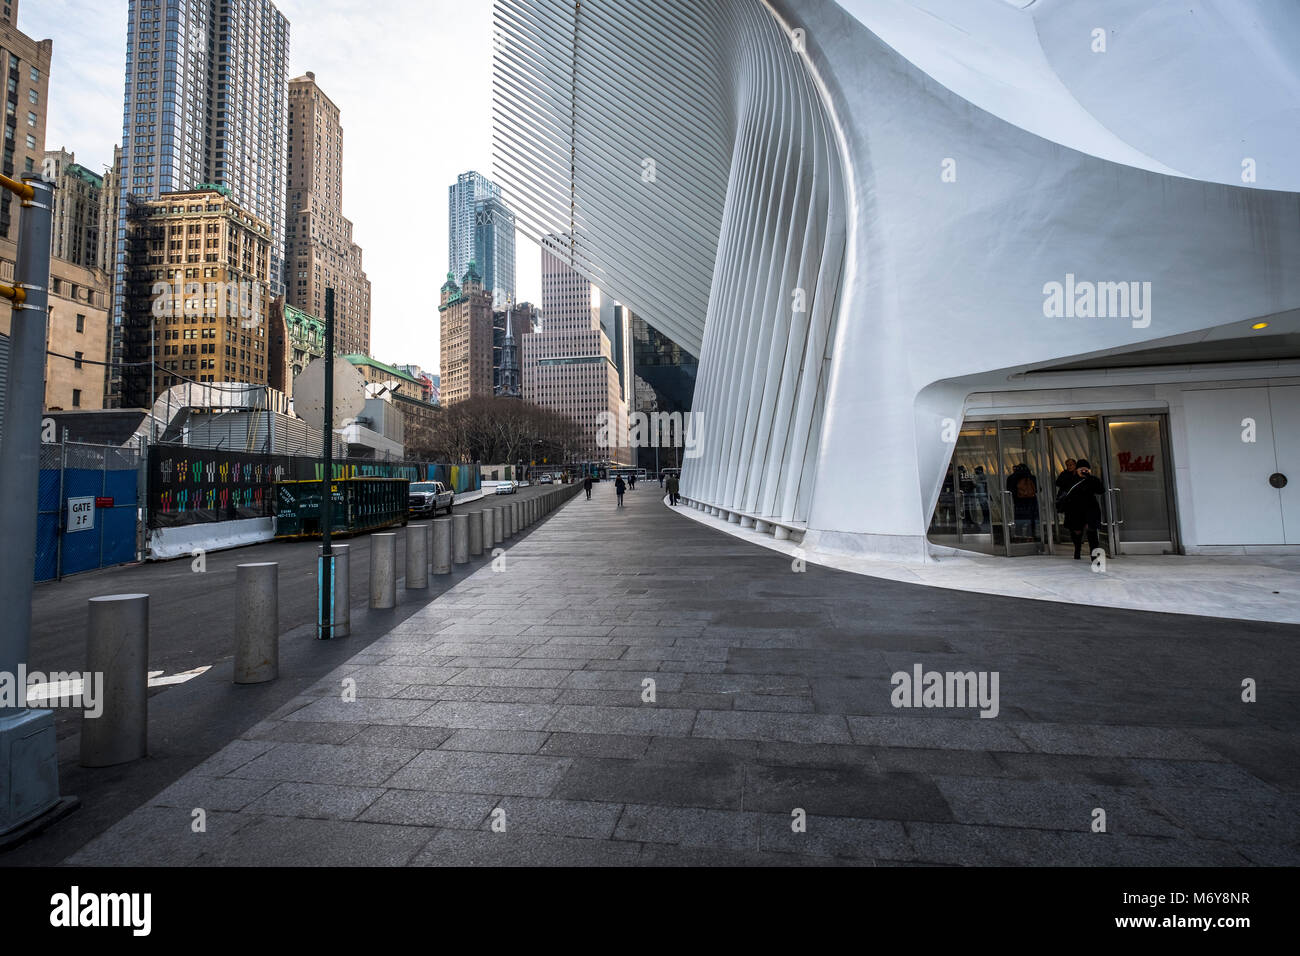 L'occhio, il nome comune della struttura che ospita il Westfield memorizza al WTC. NEW YORK. Foto Stock